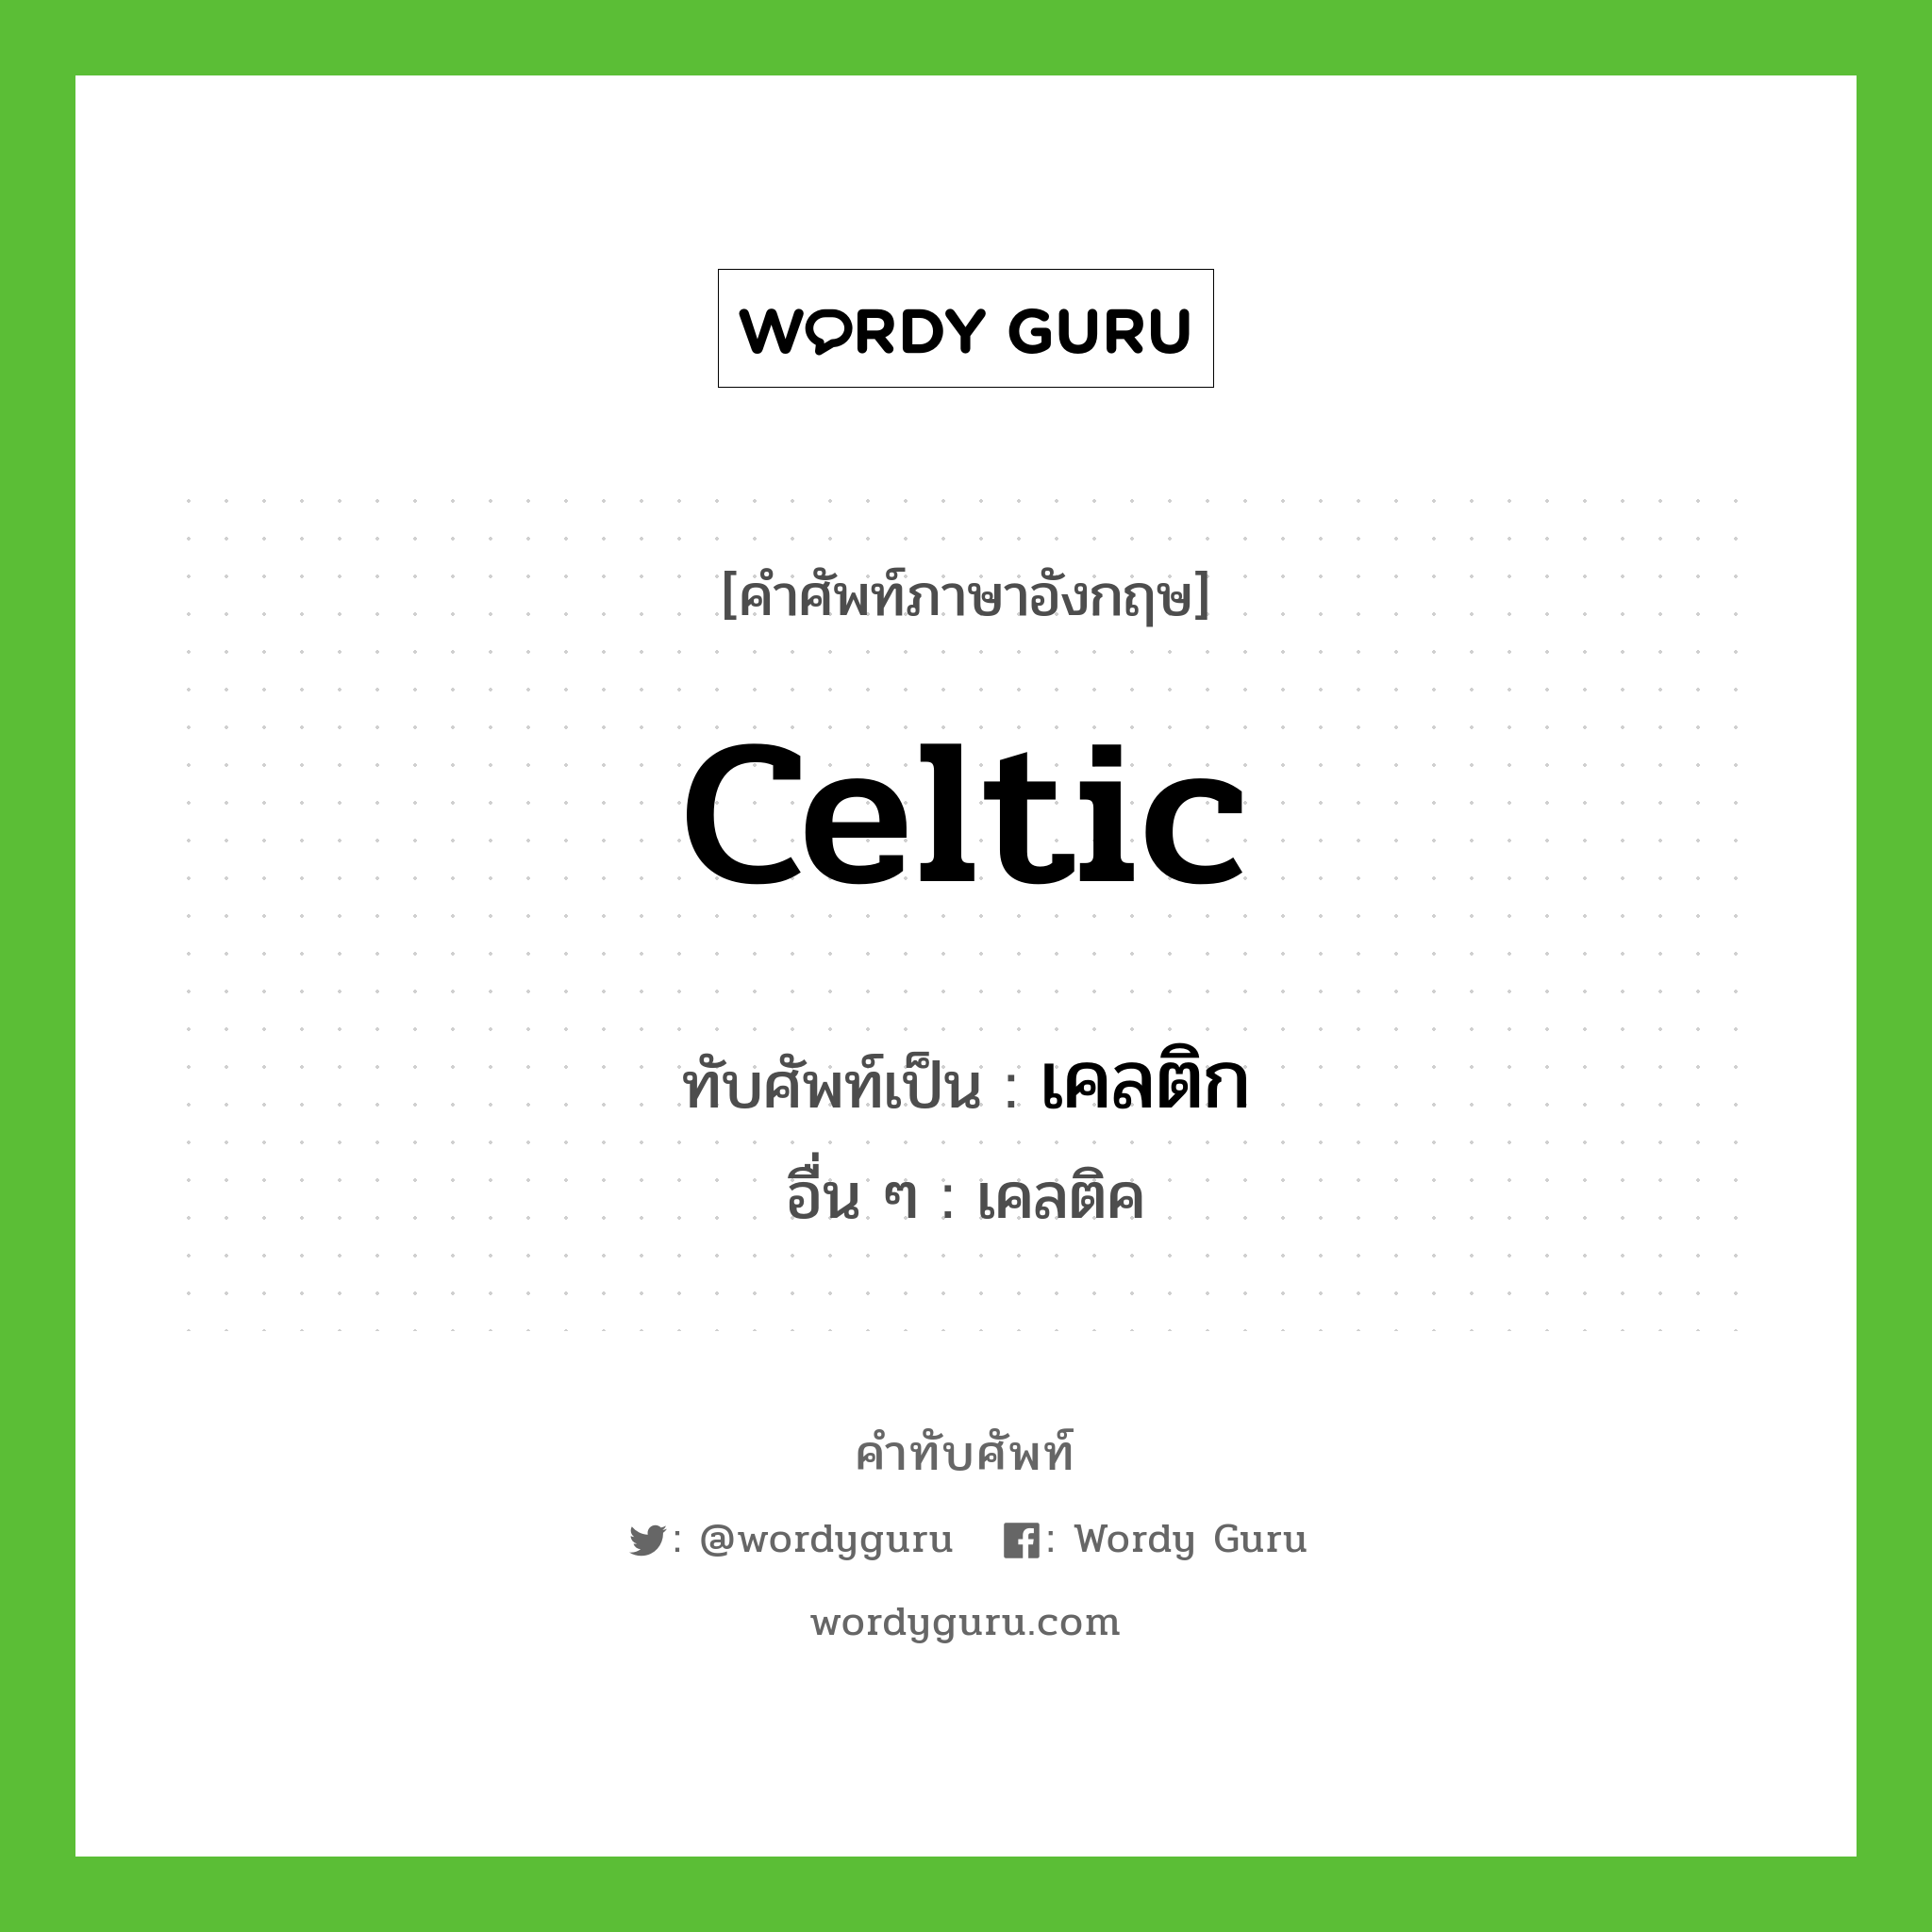 เคลติก เขียนอย่างไร?, คำศัพท์ภาษาอังกฤษ เคลติก ทับศัพท์เป็น Celtic อื่น ๆ เคลติค